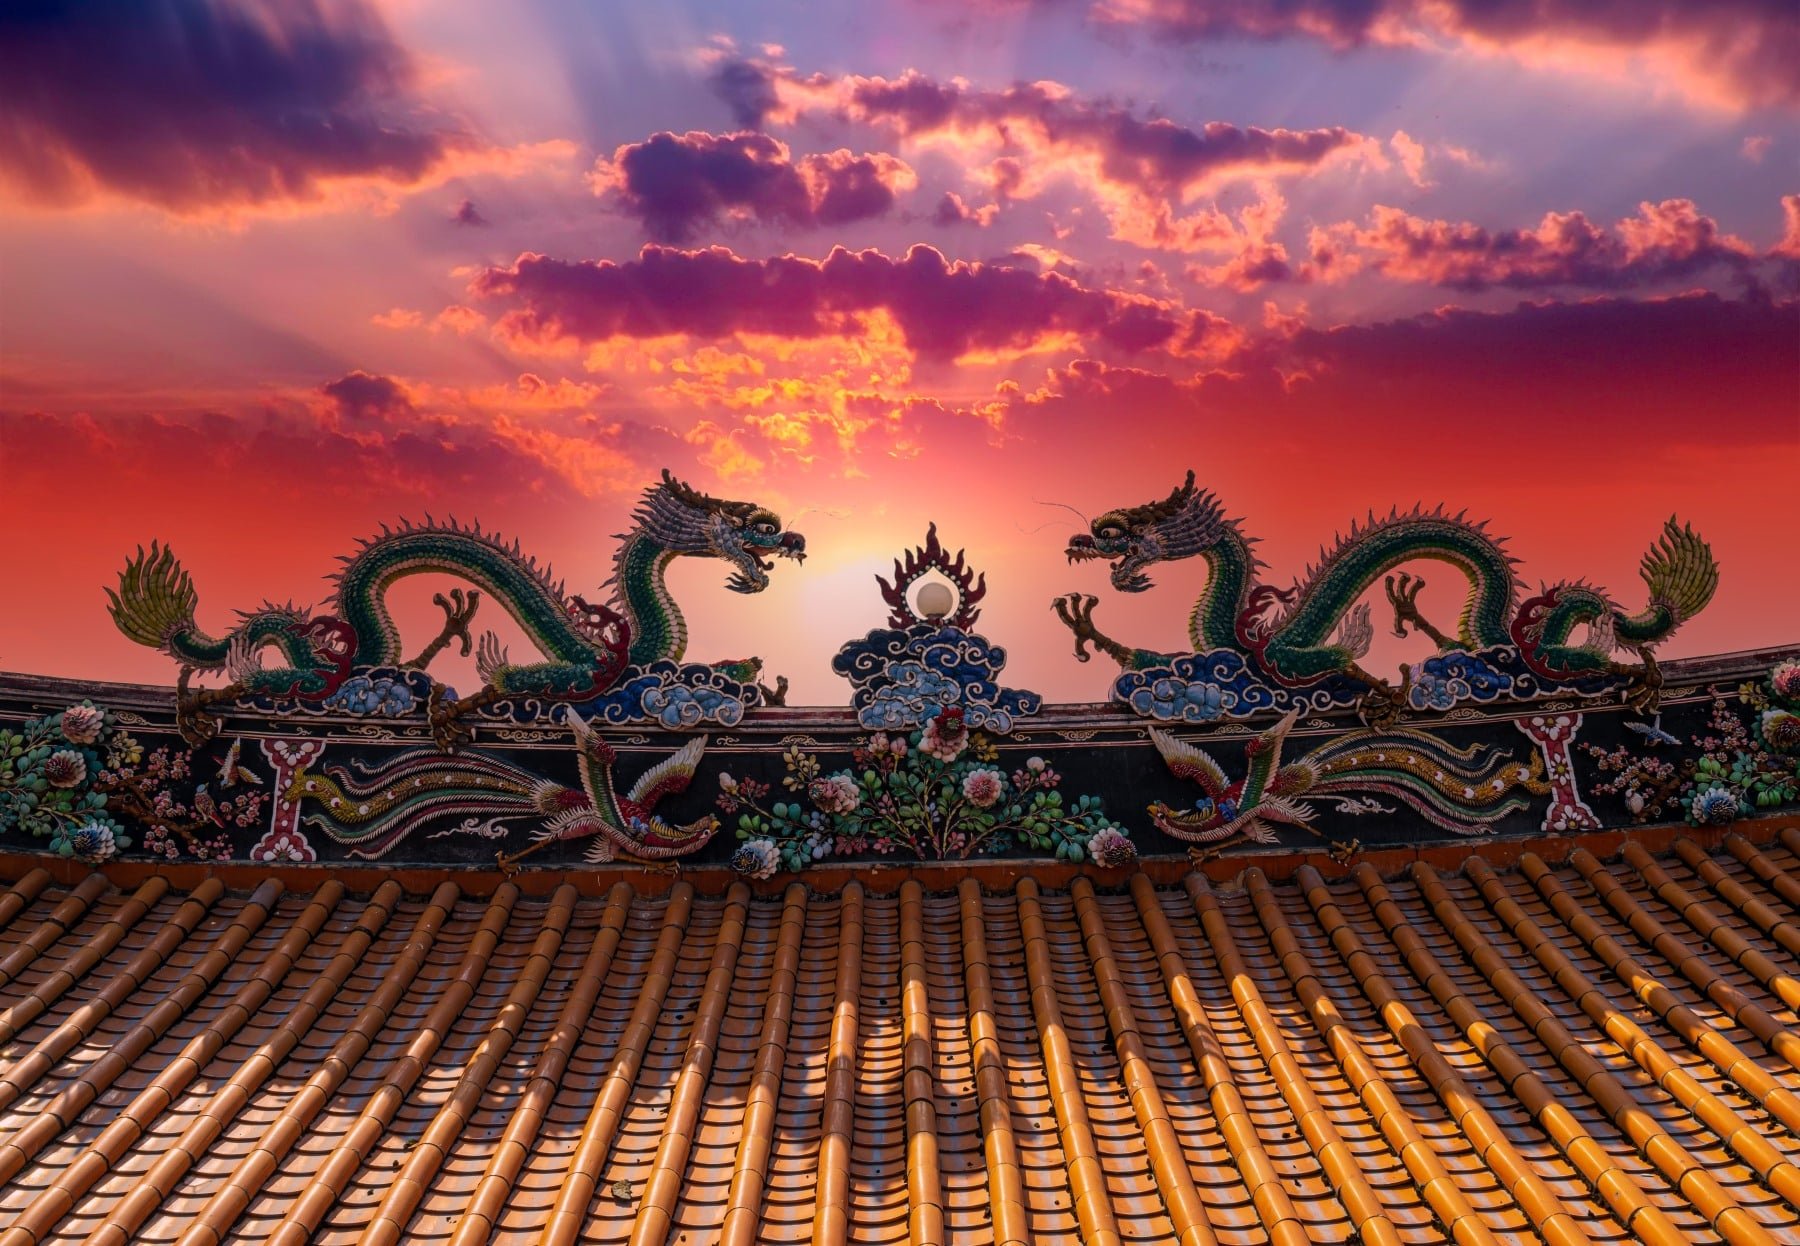 Hình tượng rồng trên mái đình, phía nam Trung Quốc. (Ảnh: Tao Jiang, Shutterstock)